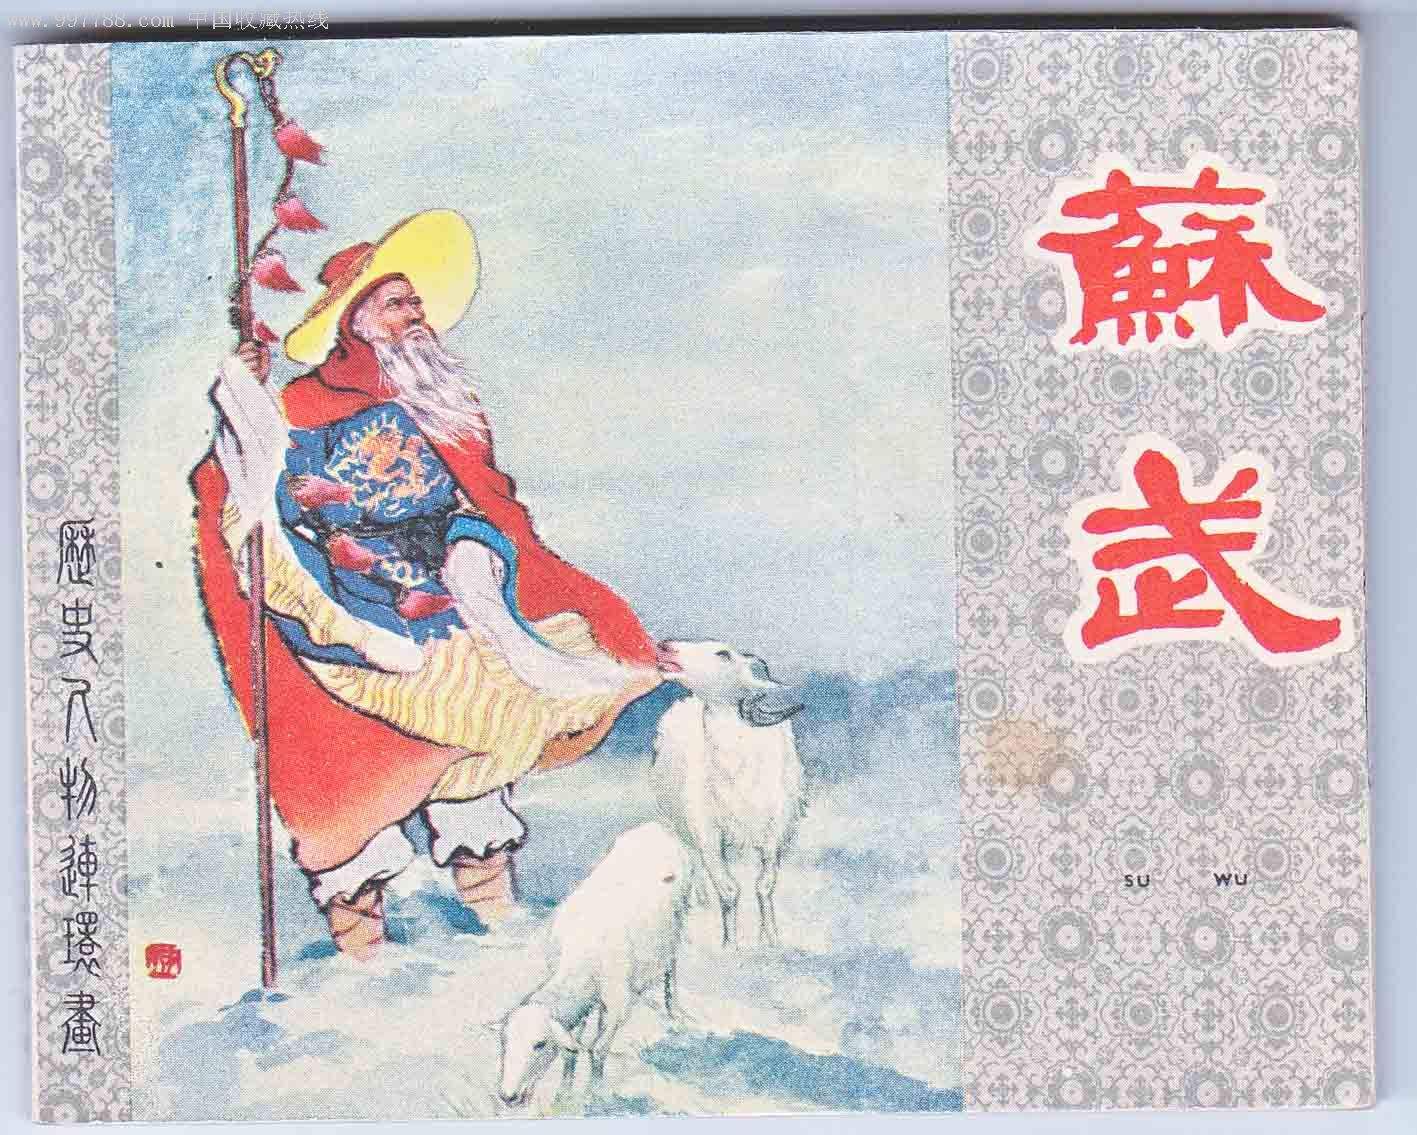 历史名人苏武的气节《大汉苏武》也未采取否定的态度